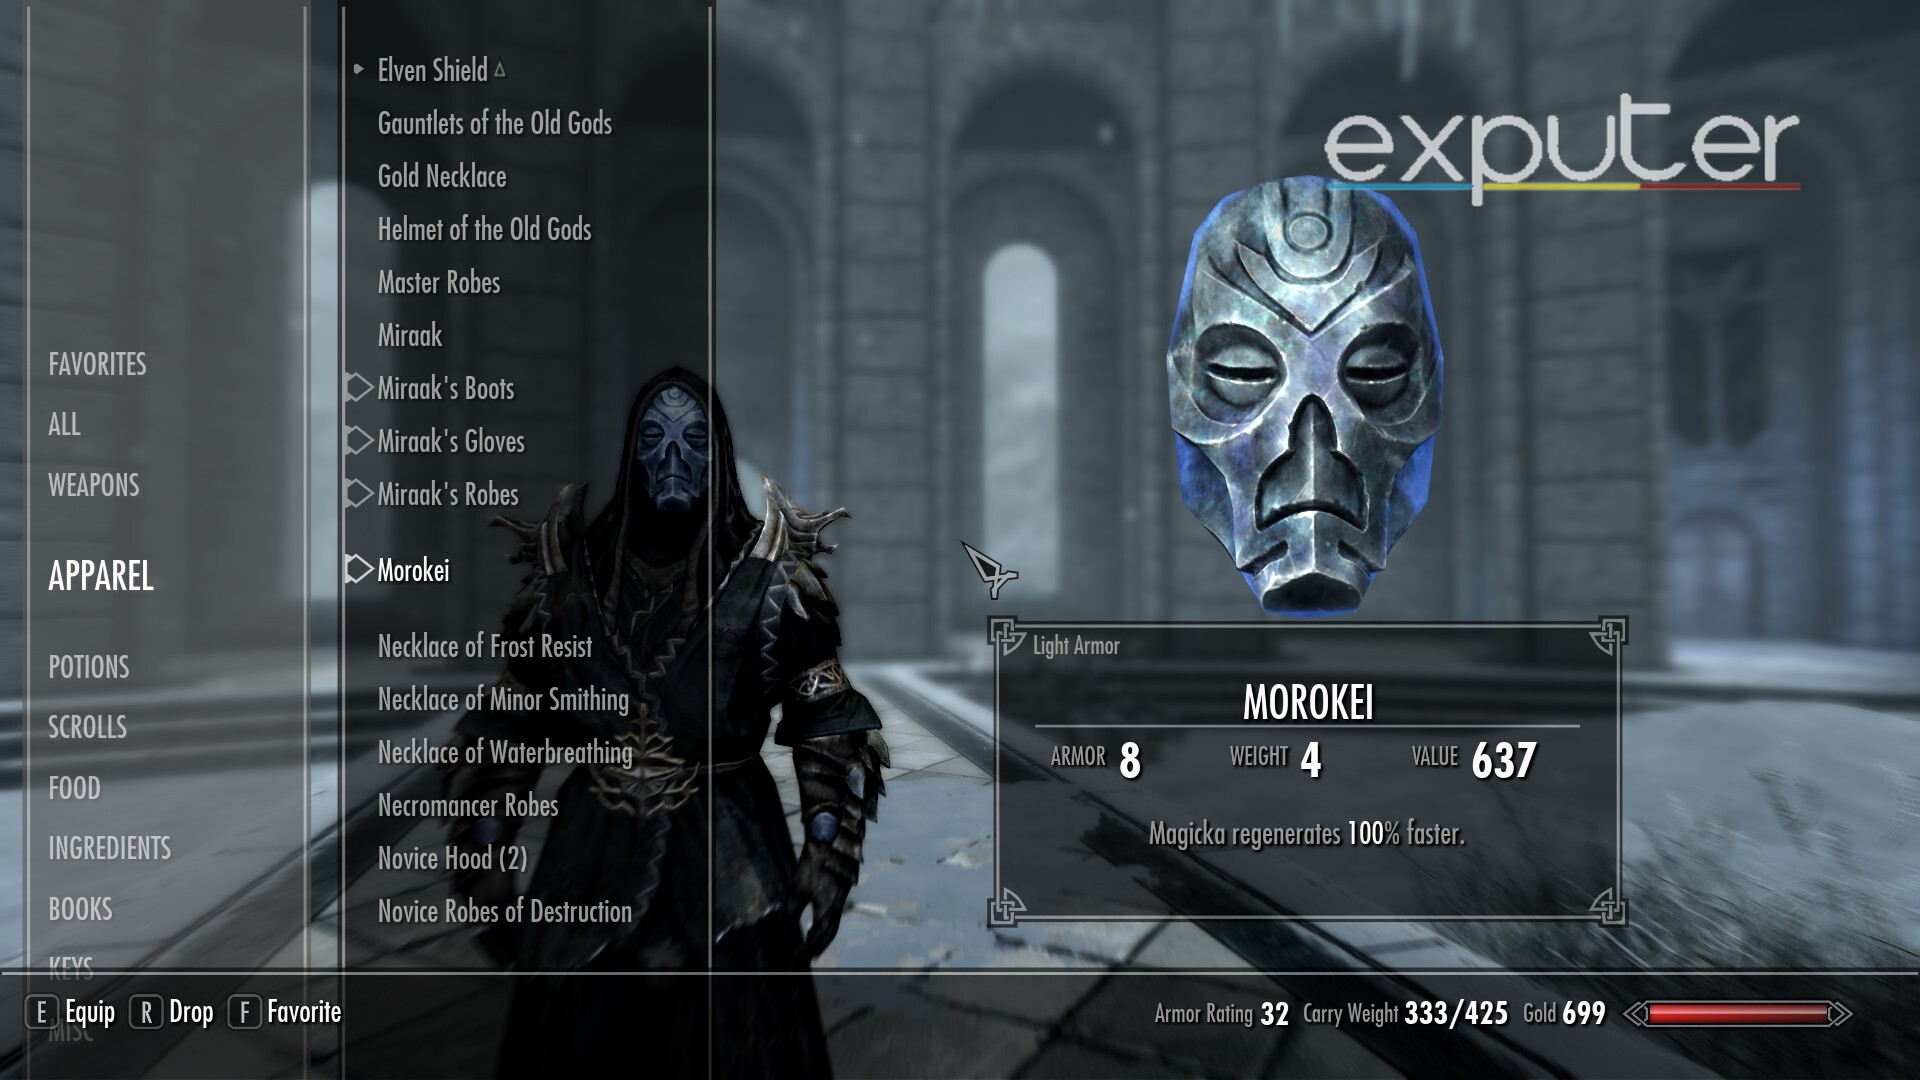 The mask of Morokei in Skyrim.